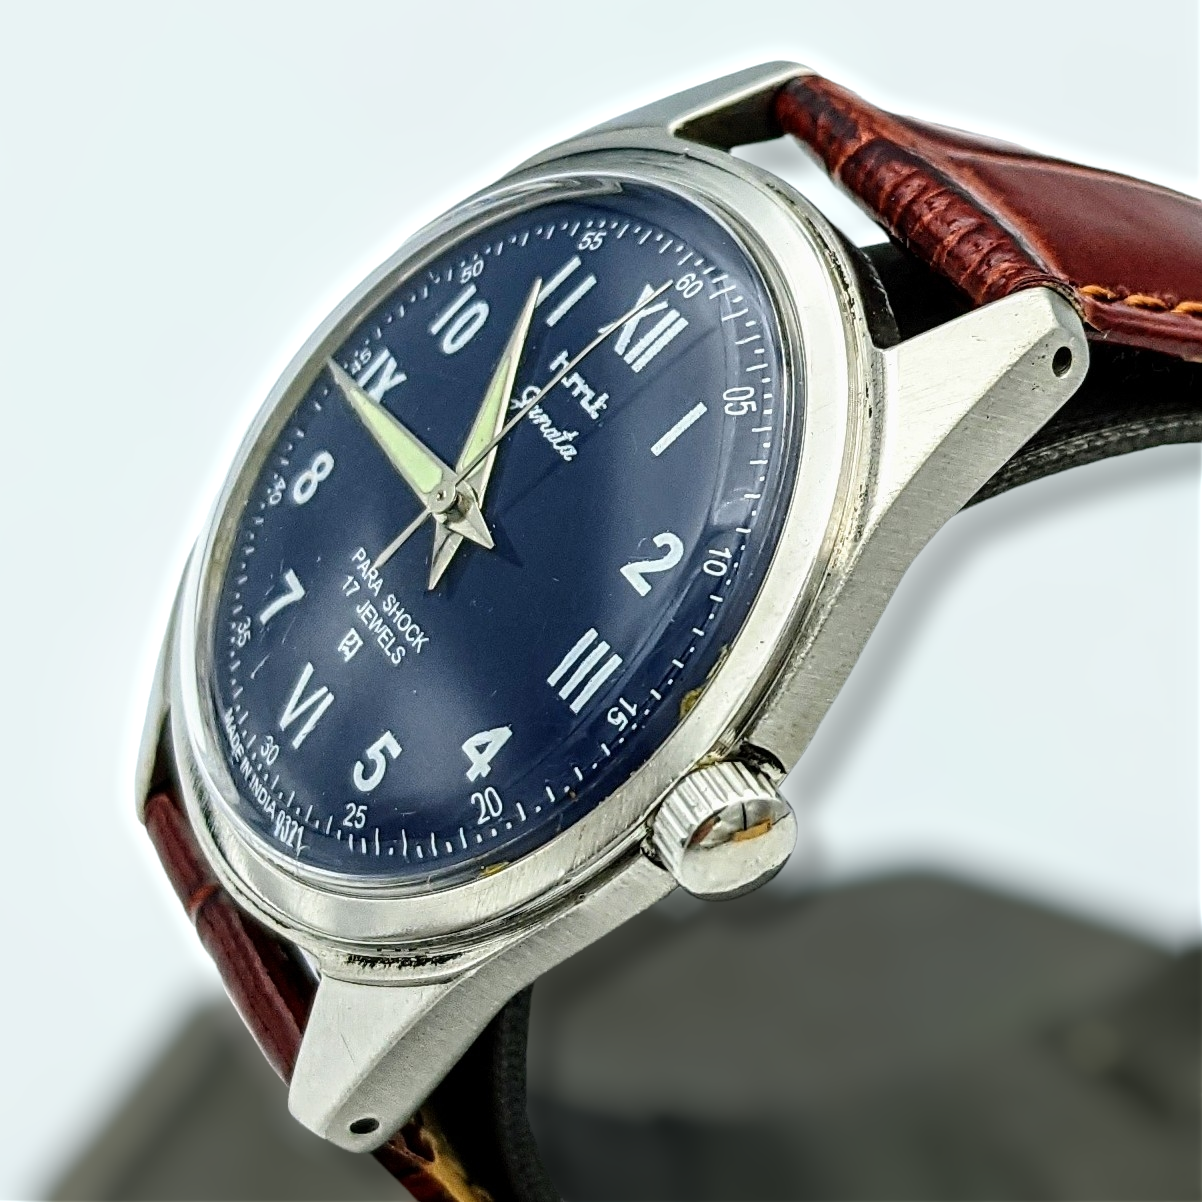 Janata Watch Roman & Arabic Numerals 17 Jewels Cal. 0231 Wristwatch